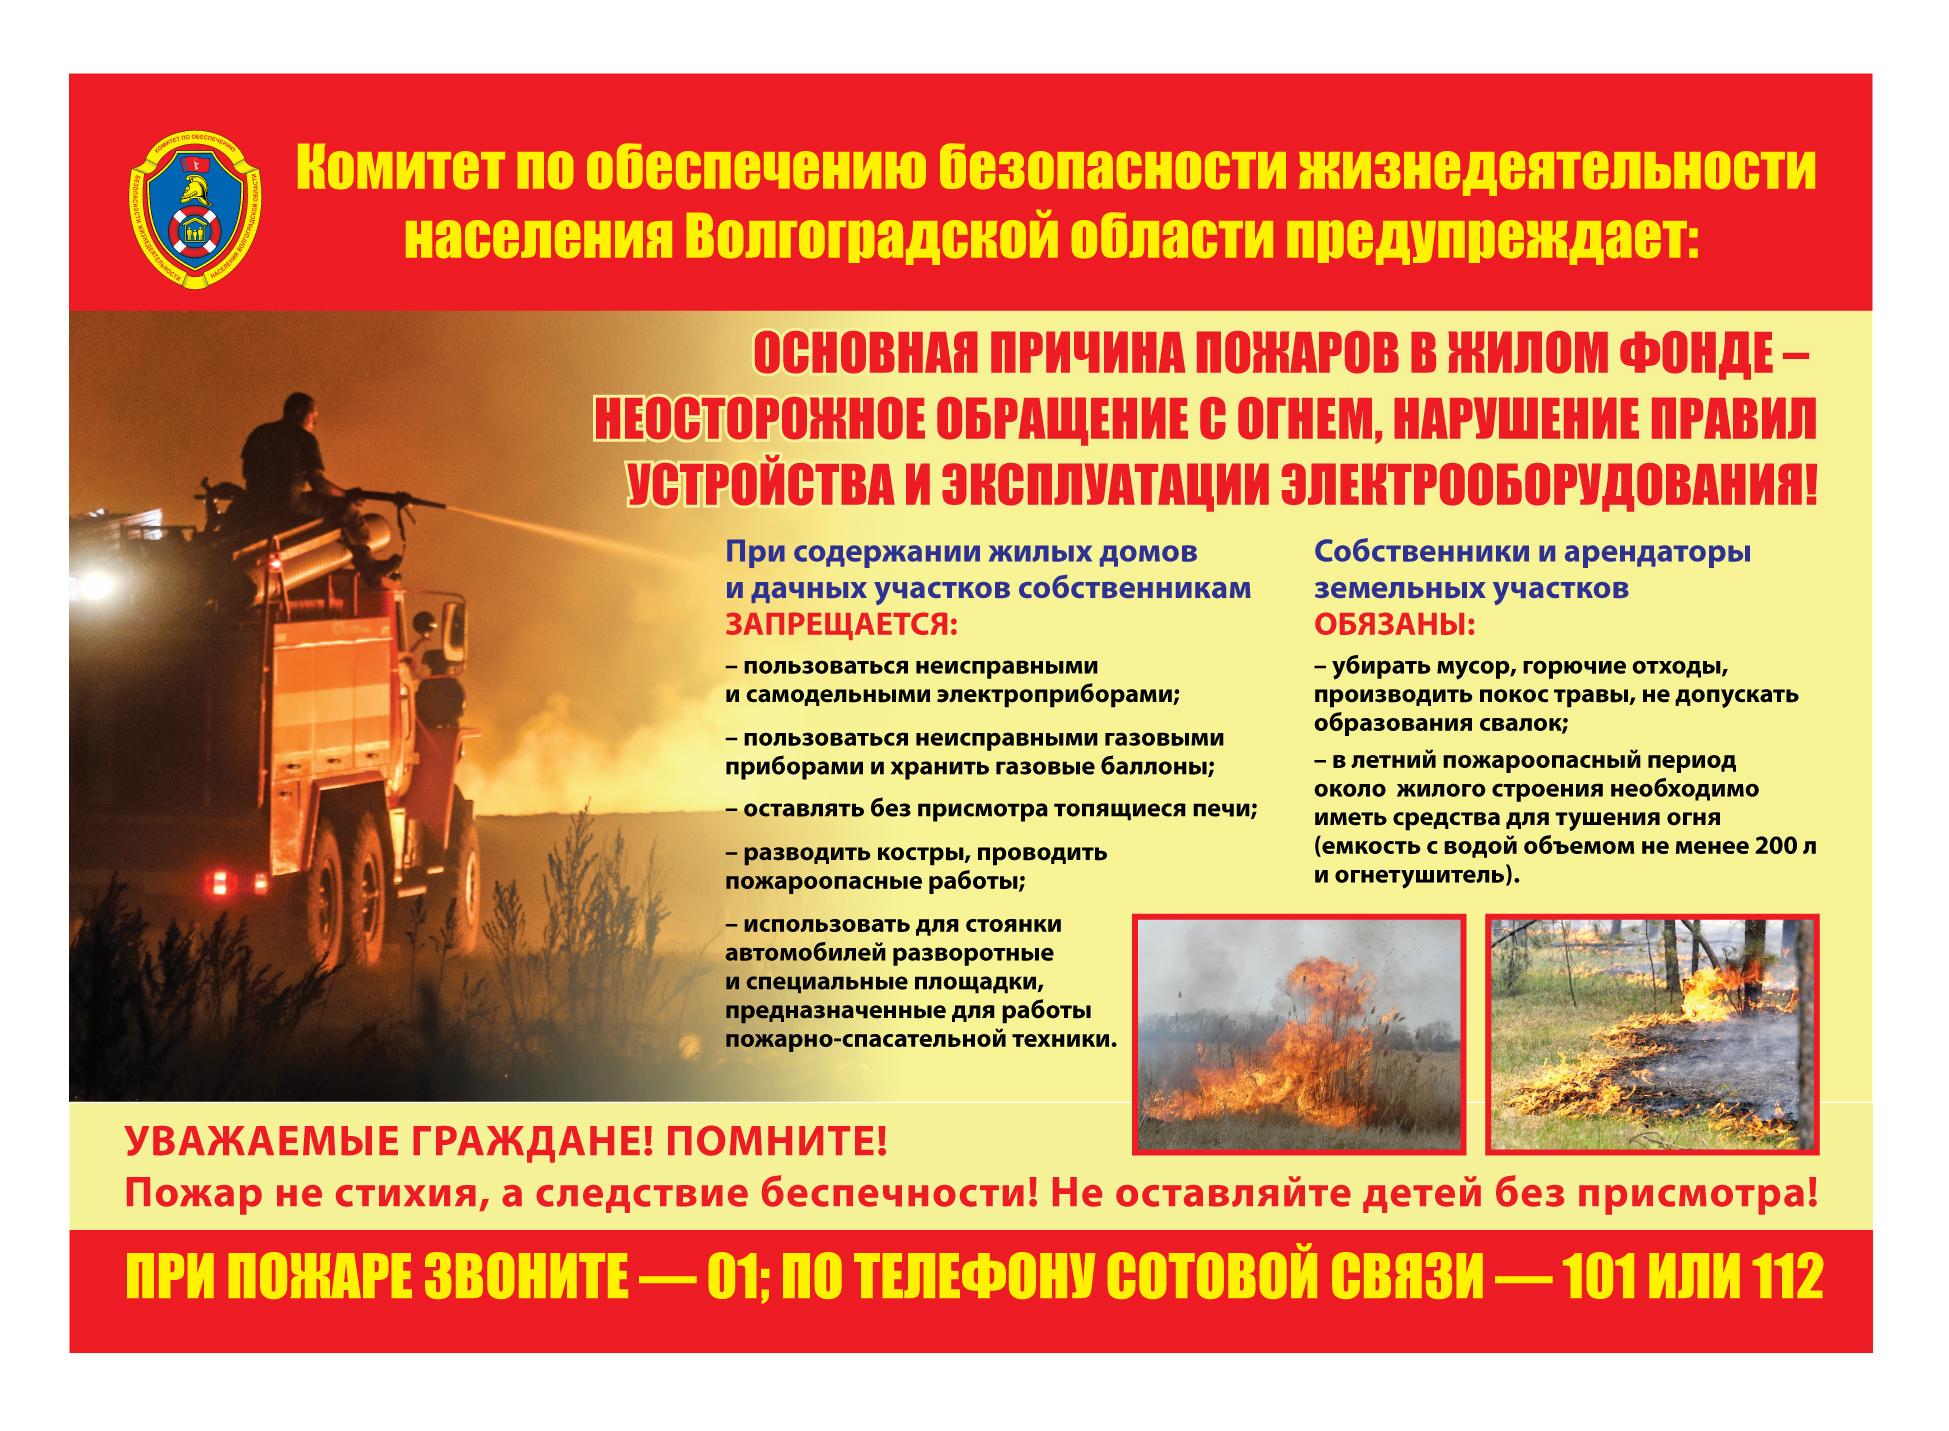 Плакат КОБЖН - Неосторожное обращение с огнем ОПАСНО! 2021 год.jpg